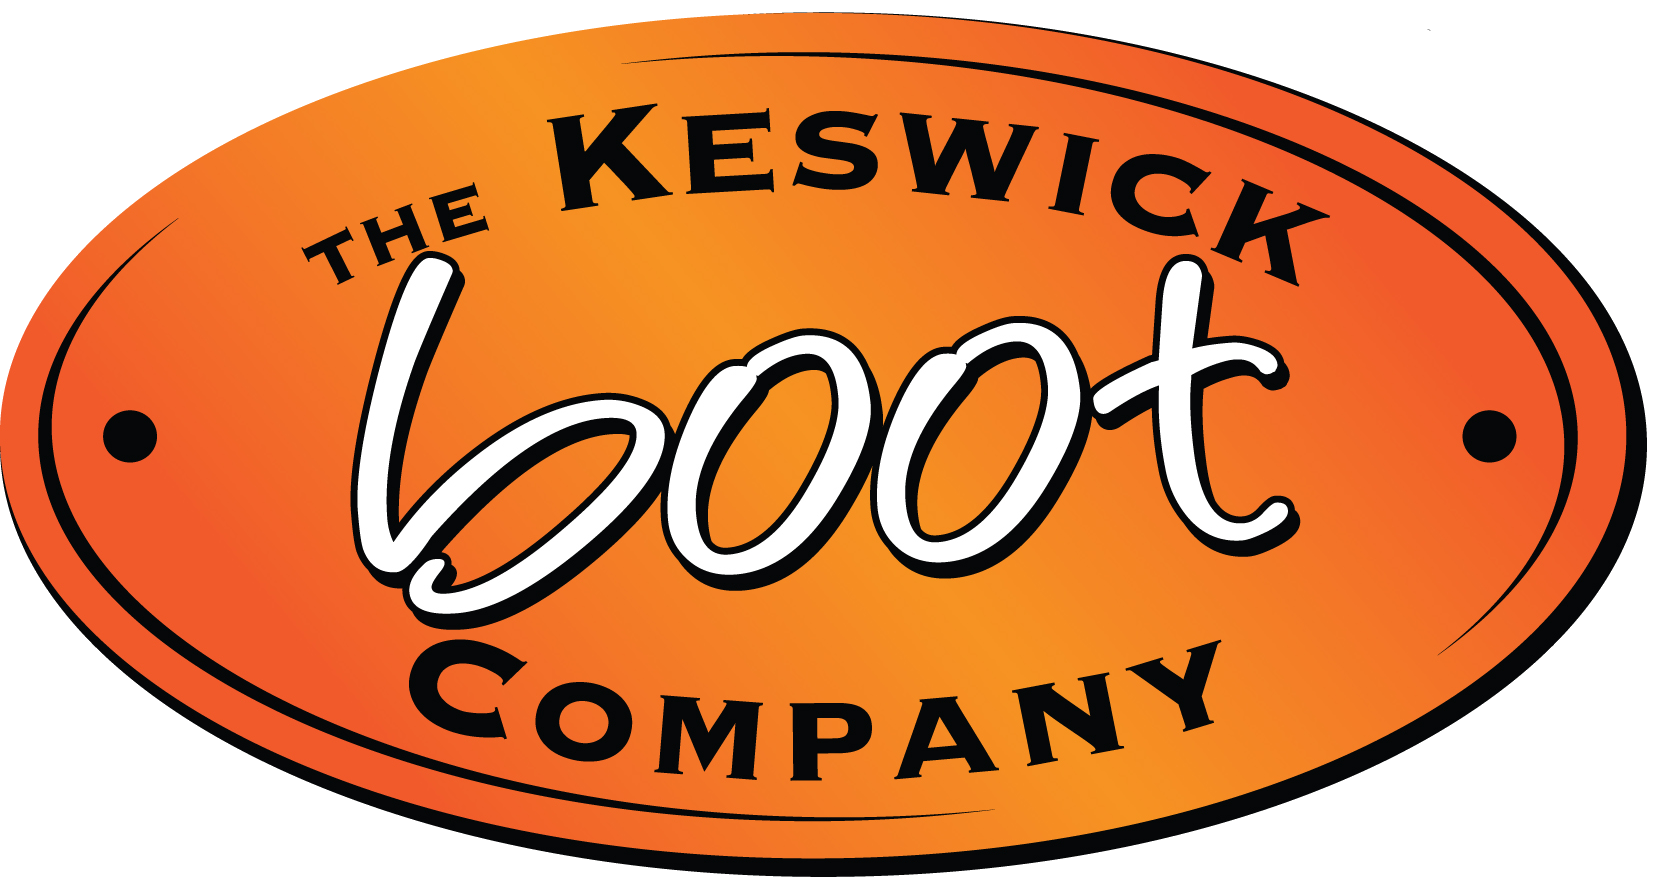 The Keswick Boot Company